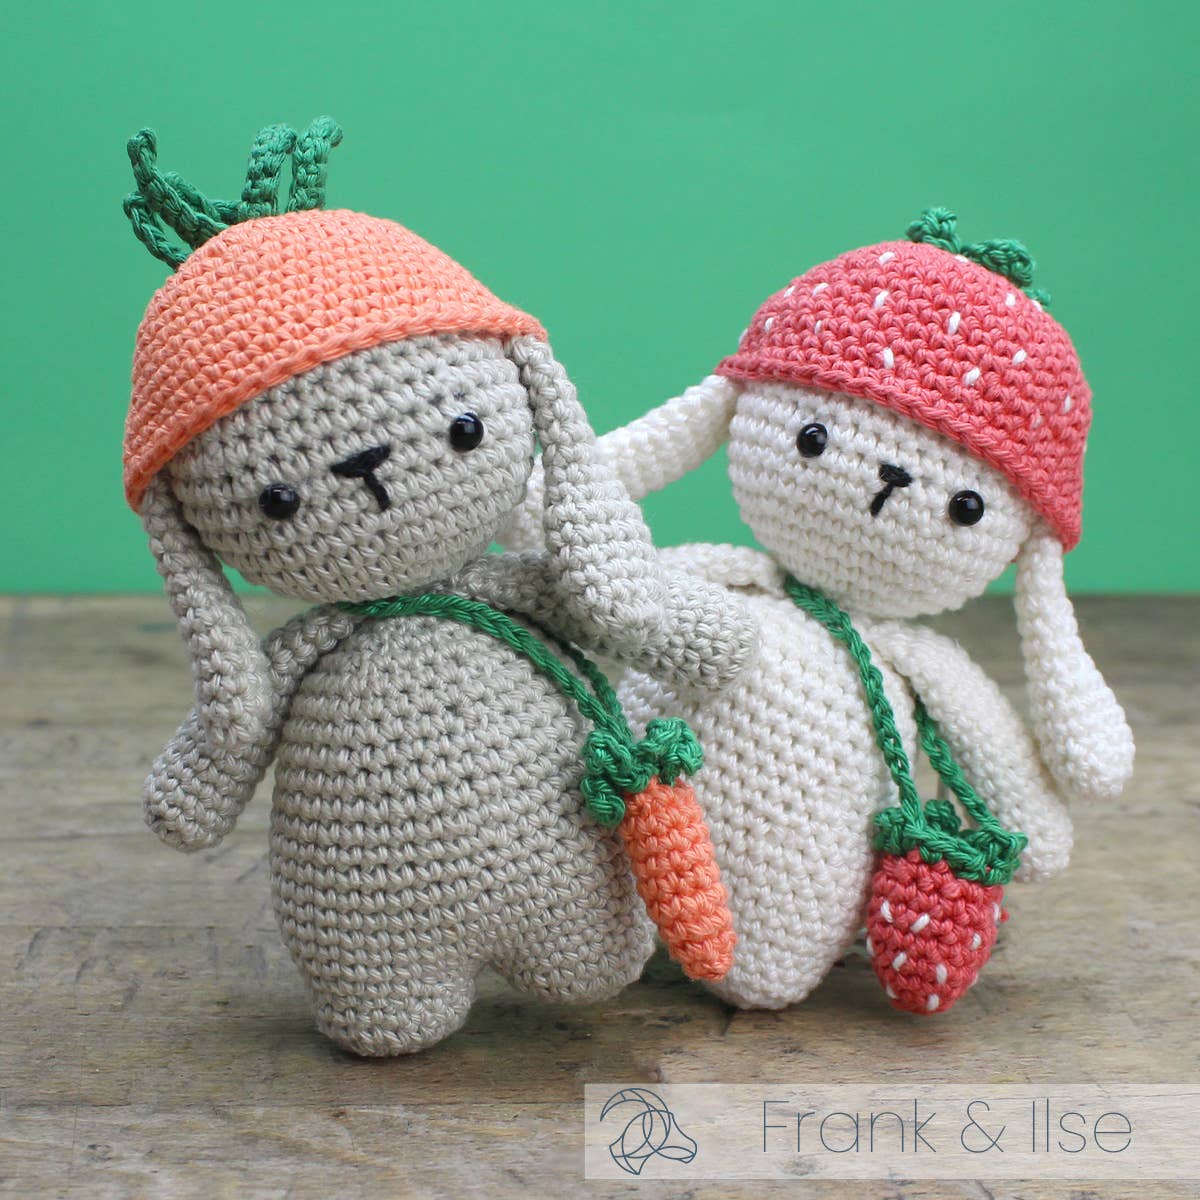 Hardicraft - DIY Crochet Kit - Ilse Rabbit